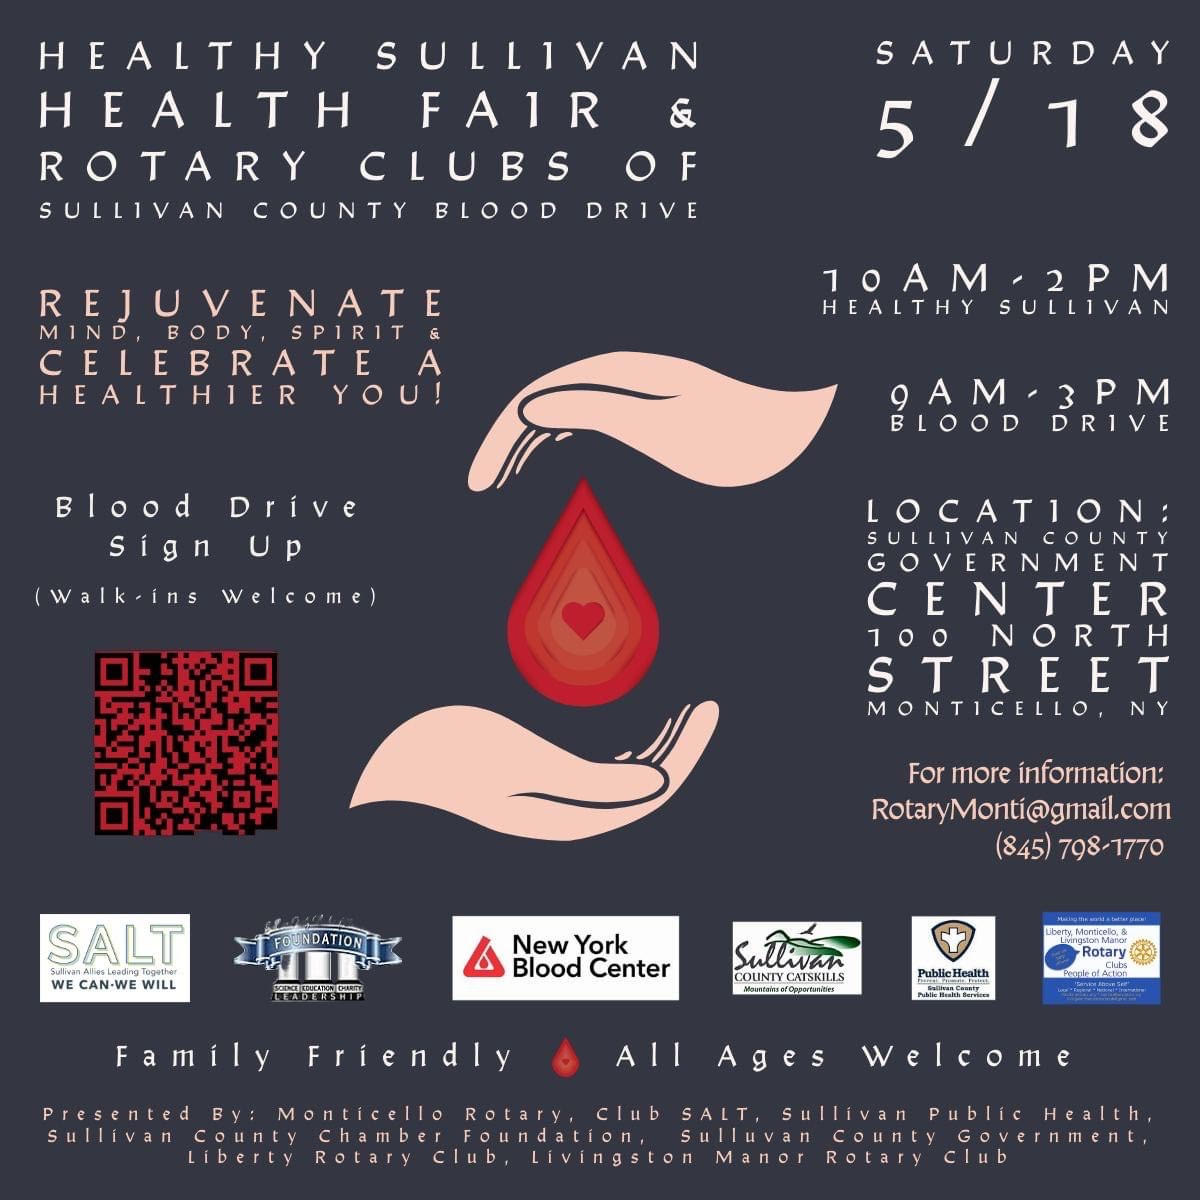 Health Sullivan Health Fair & Rotary Clubs of Sullivan County